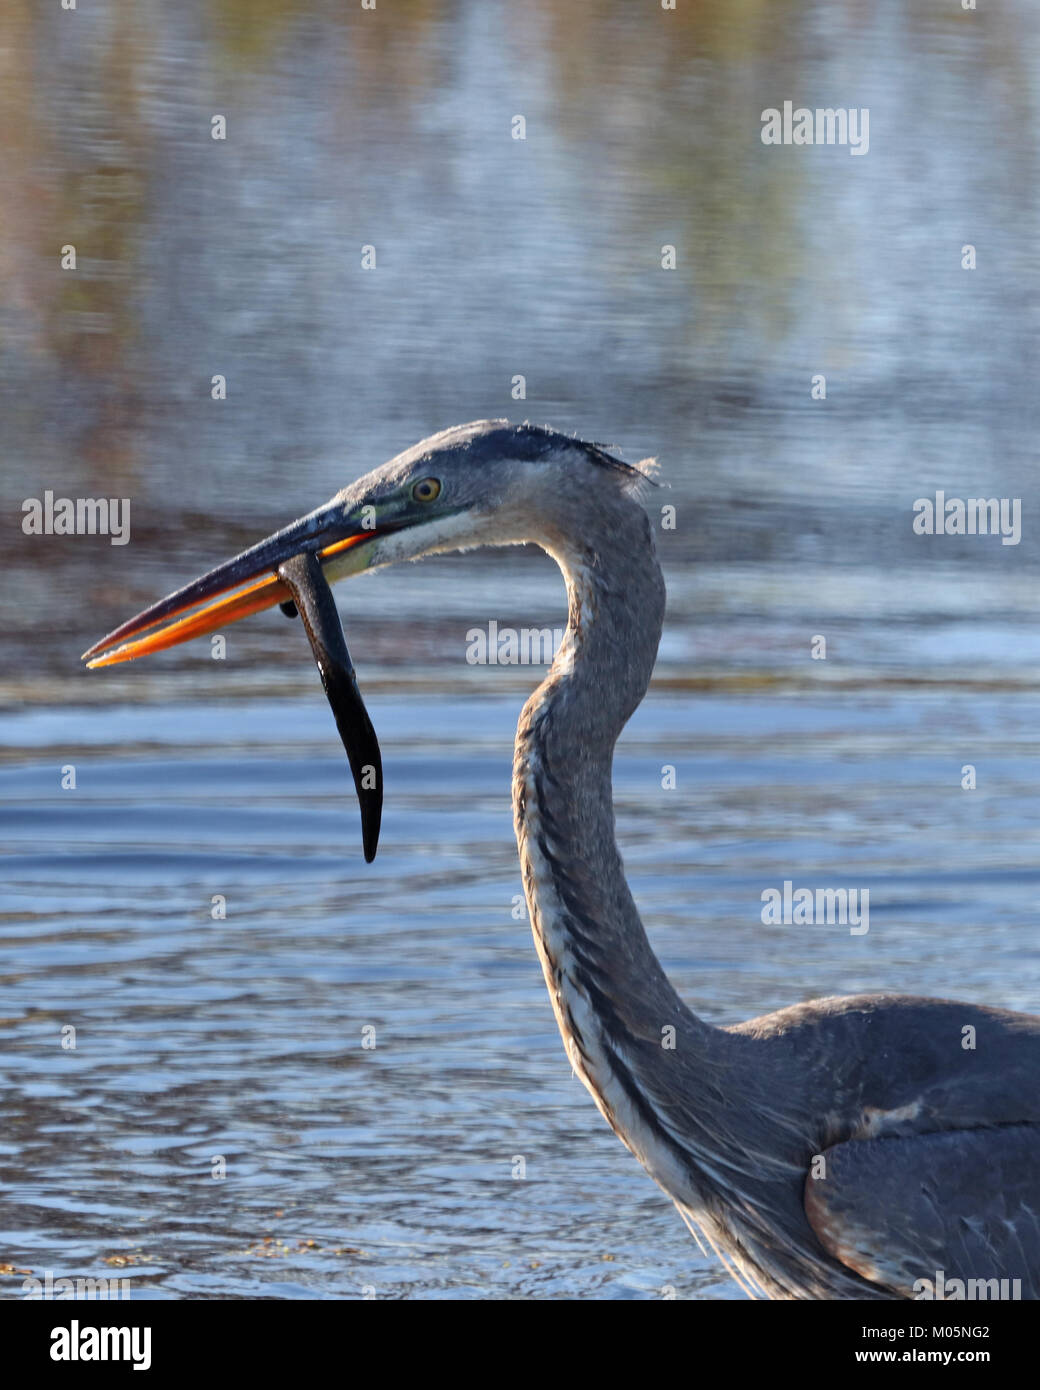 Closeup profilo di heron con snake penzolante dal becco Foto Stock